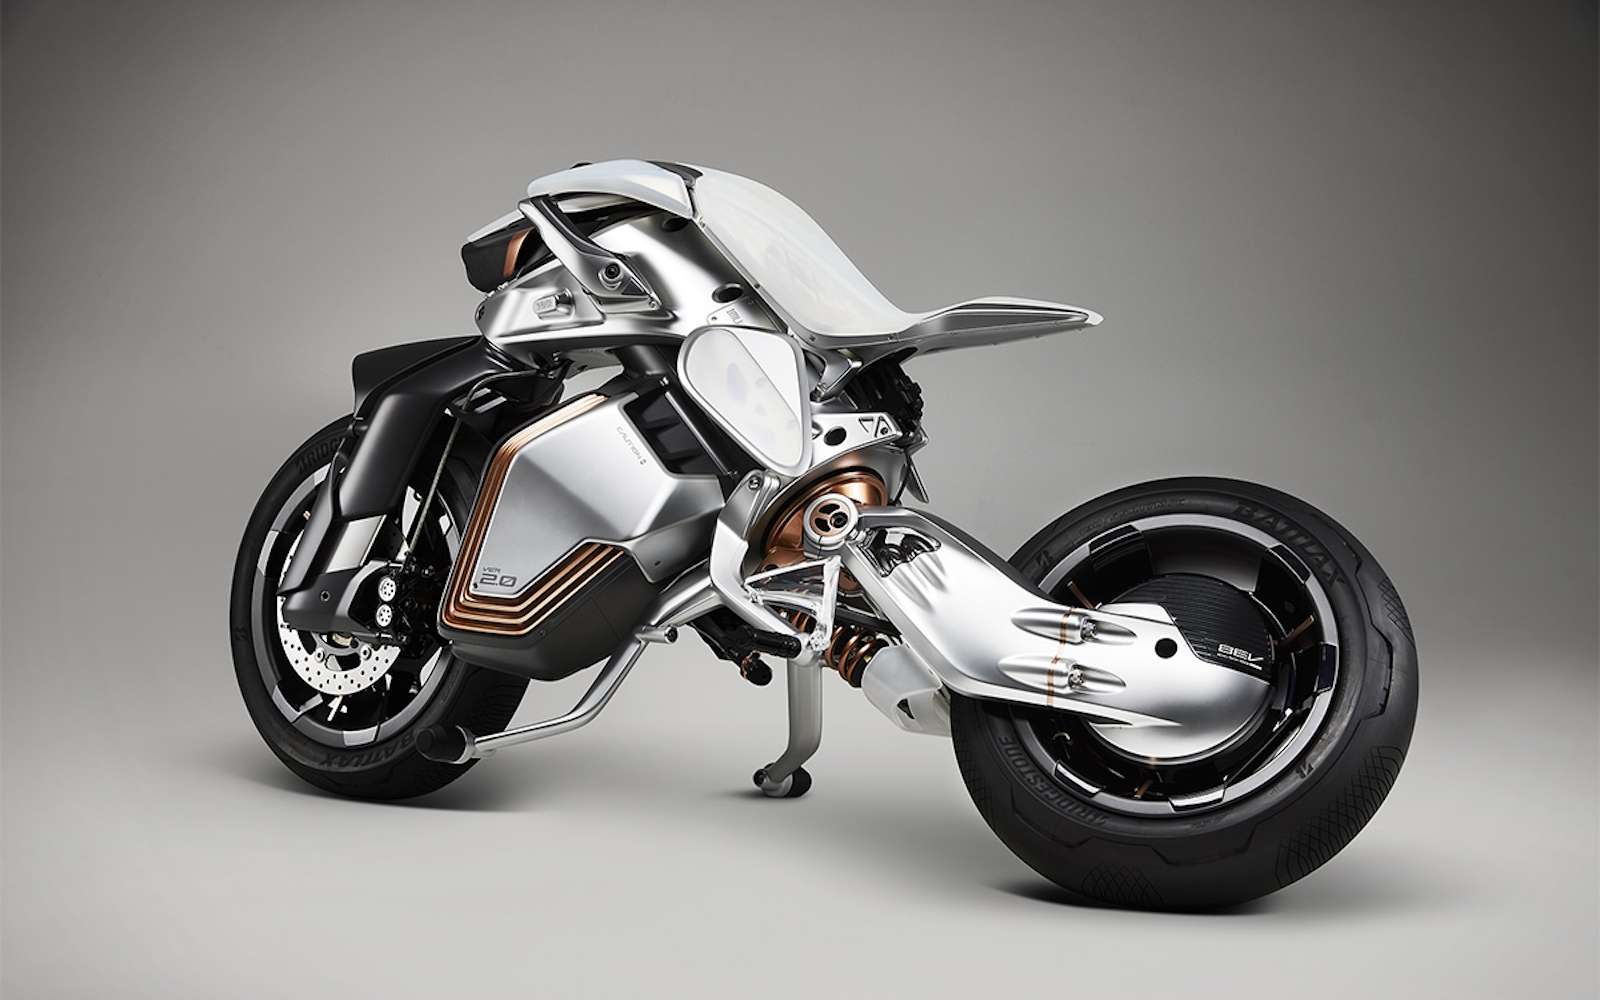 Yamaha fait un saut technologique avec sa moto Motoroid 2